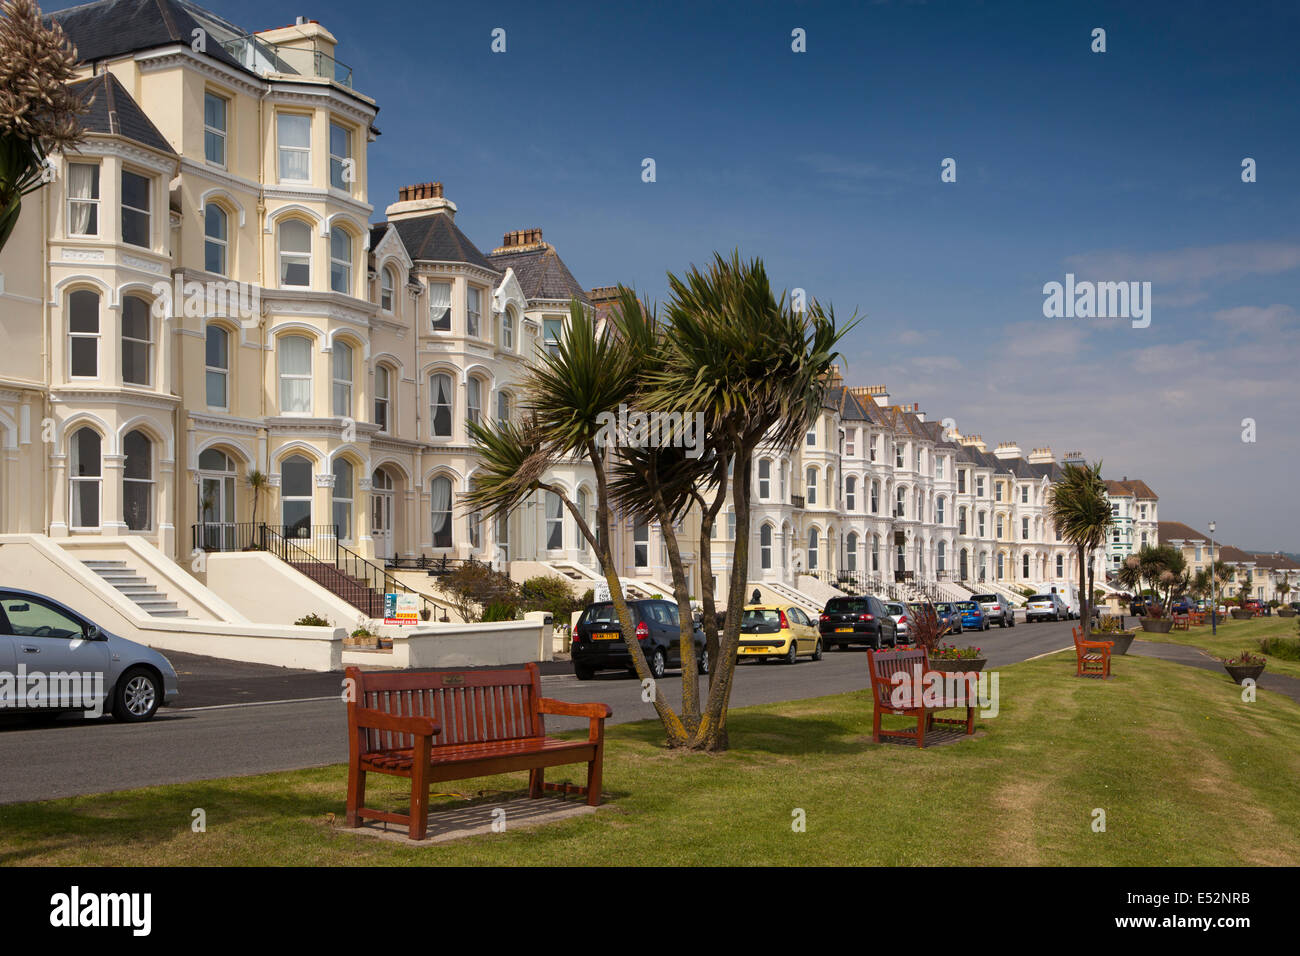 Isle of Man, Port St Mary, The Promenade Stock Photo